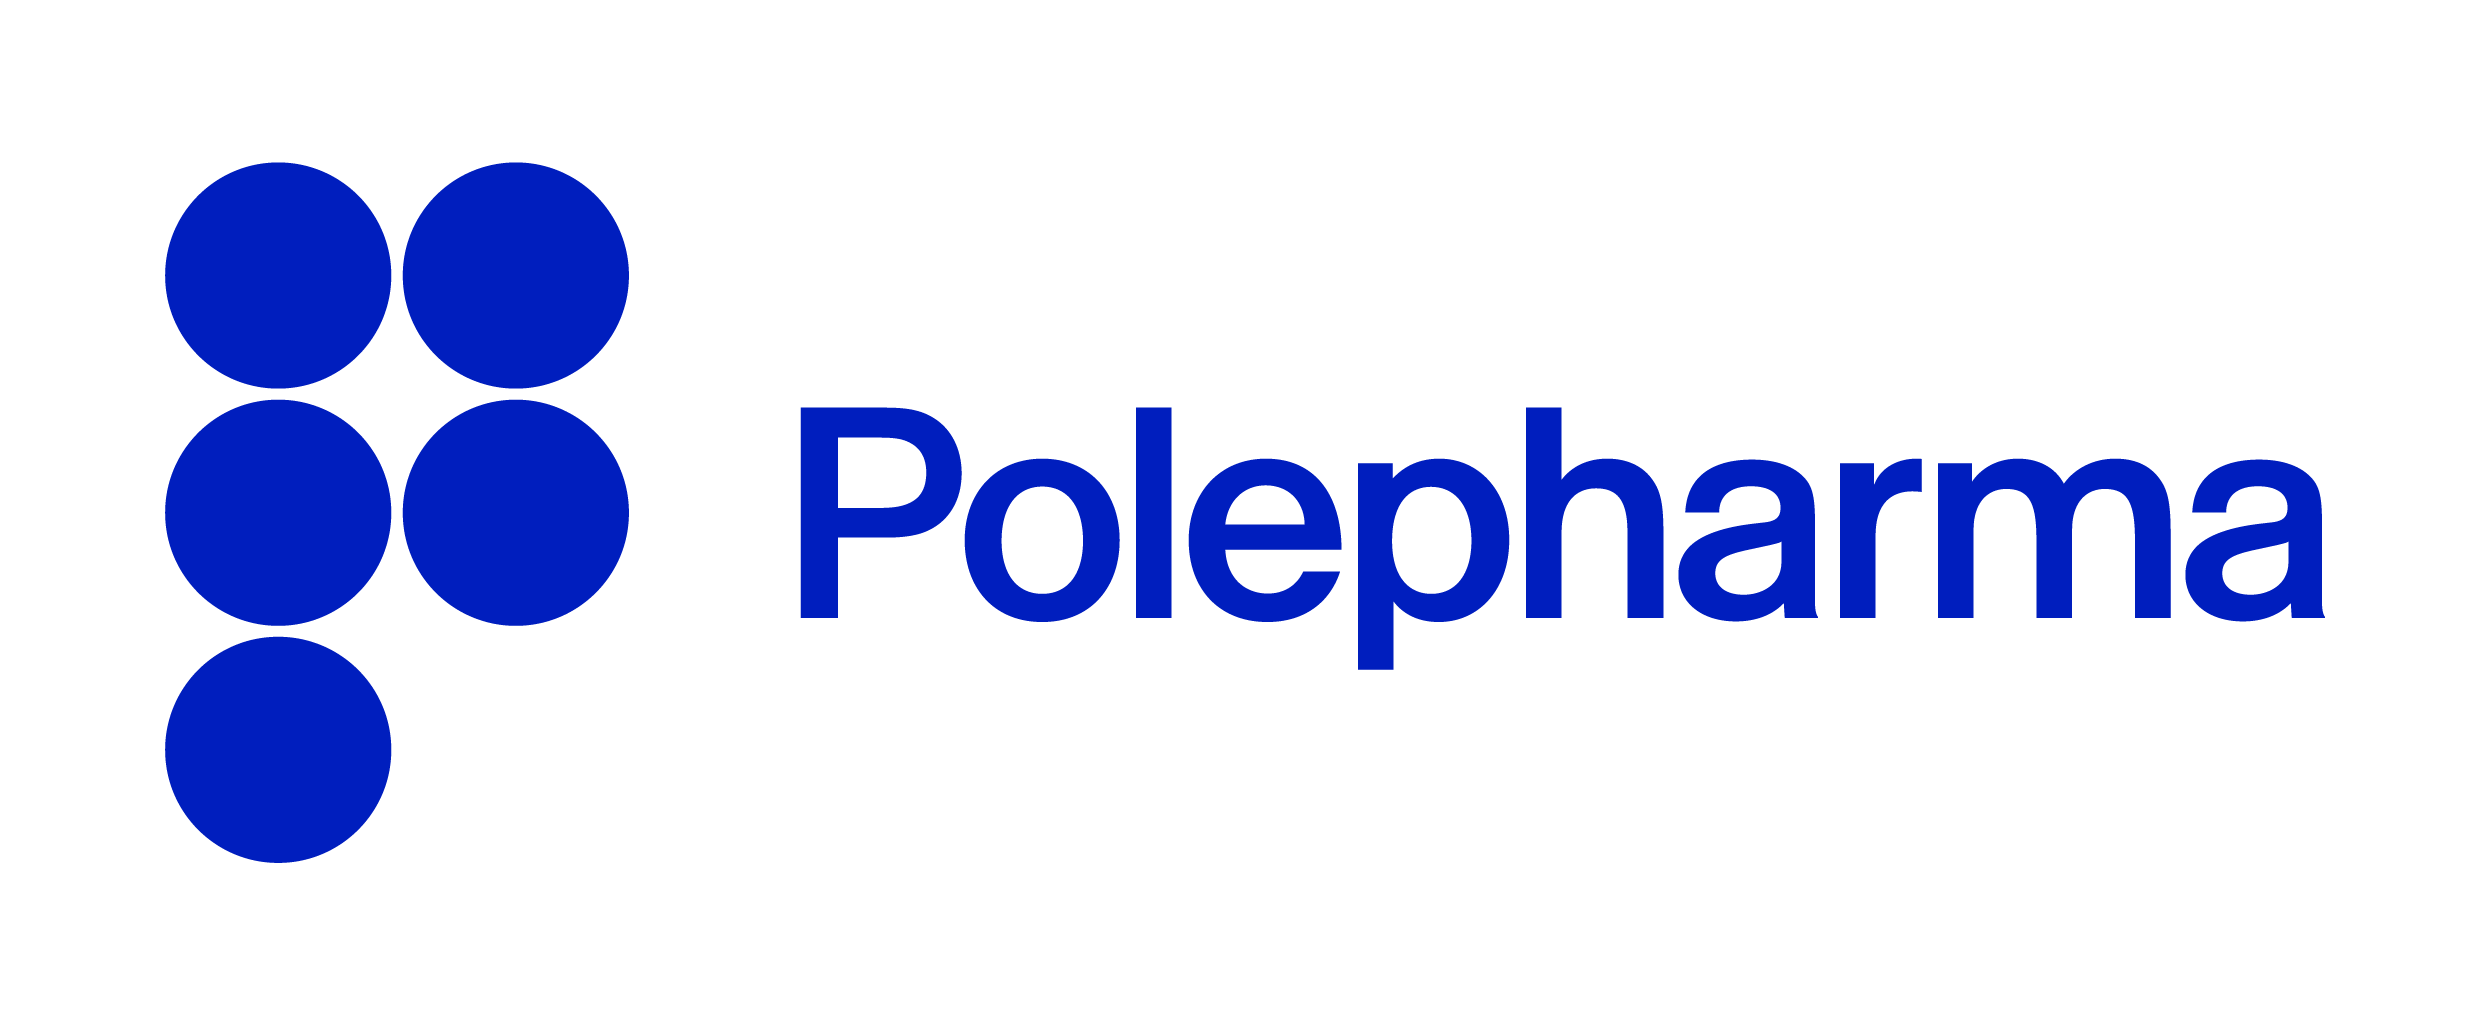 Large logo of Polepharma